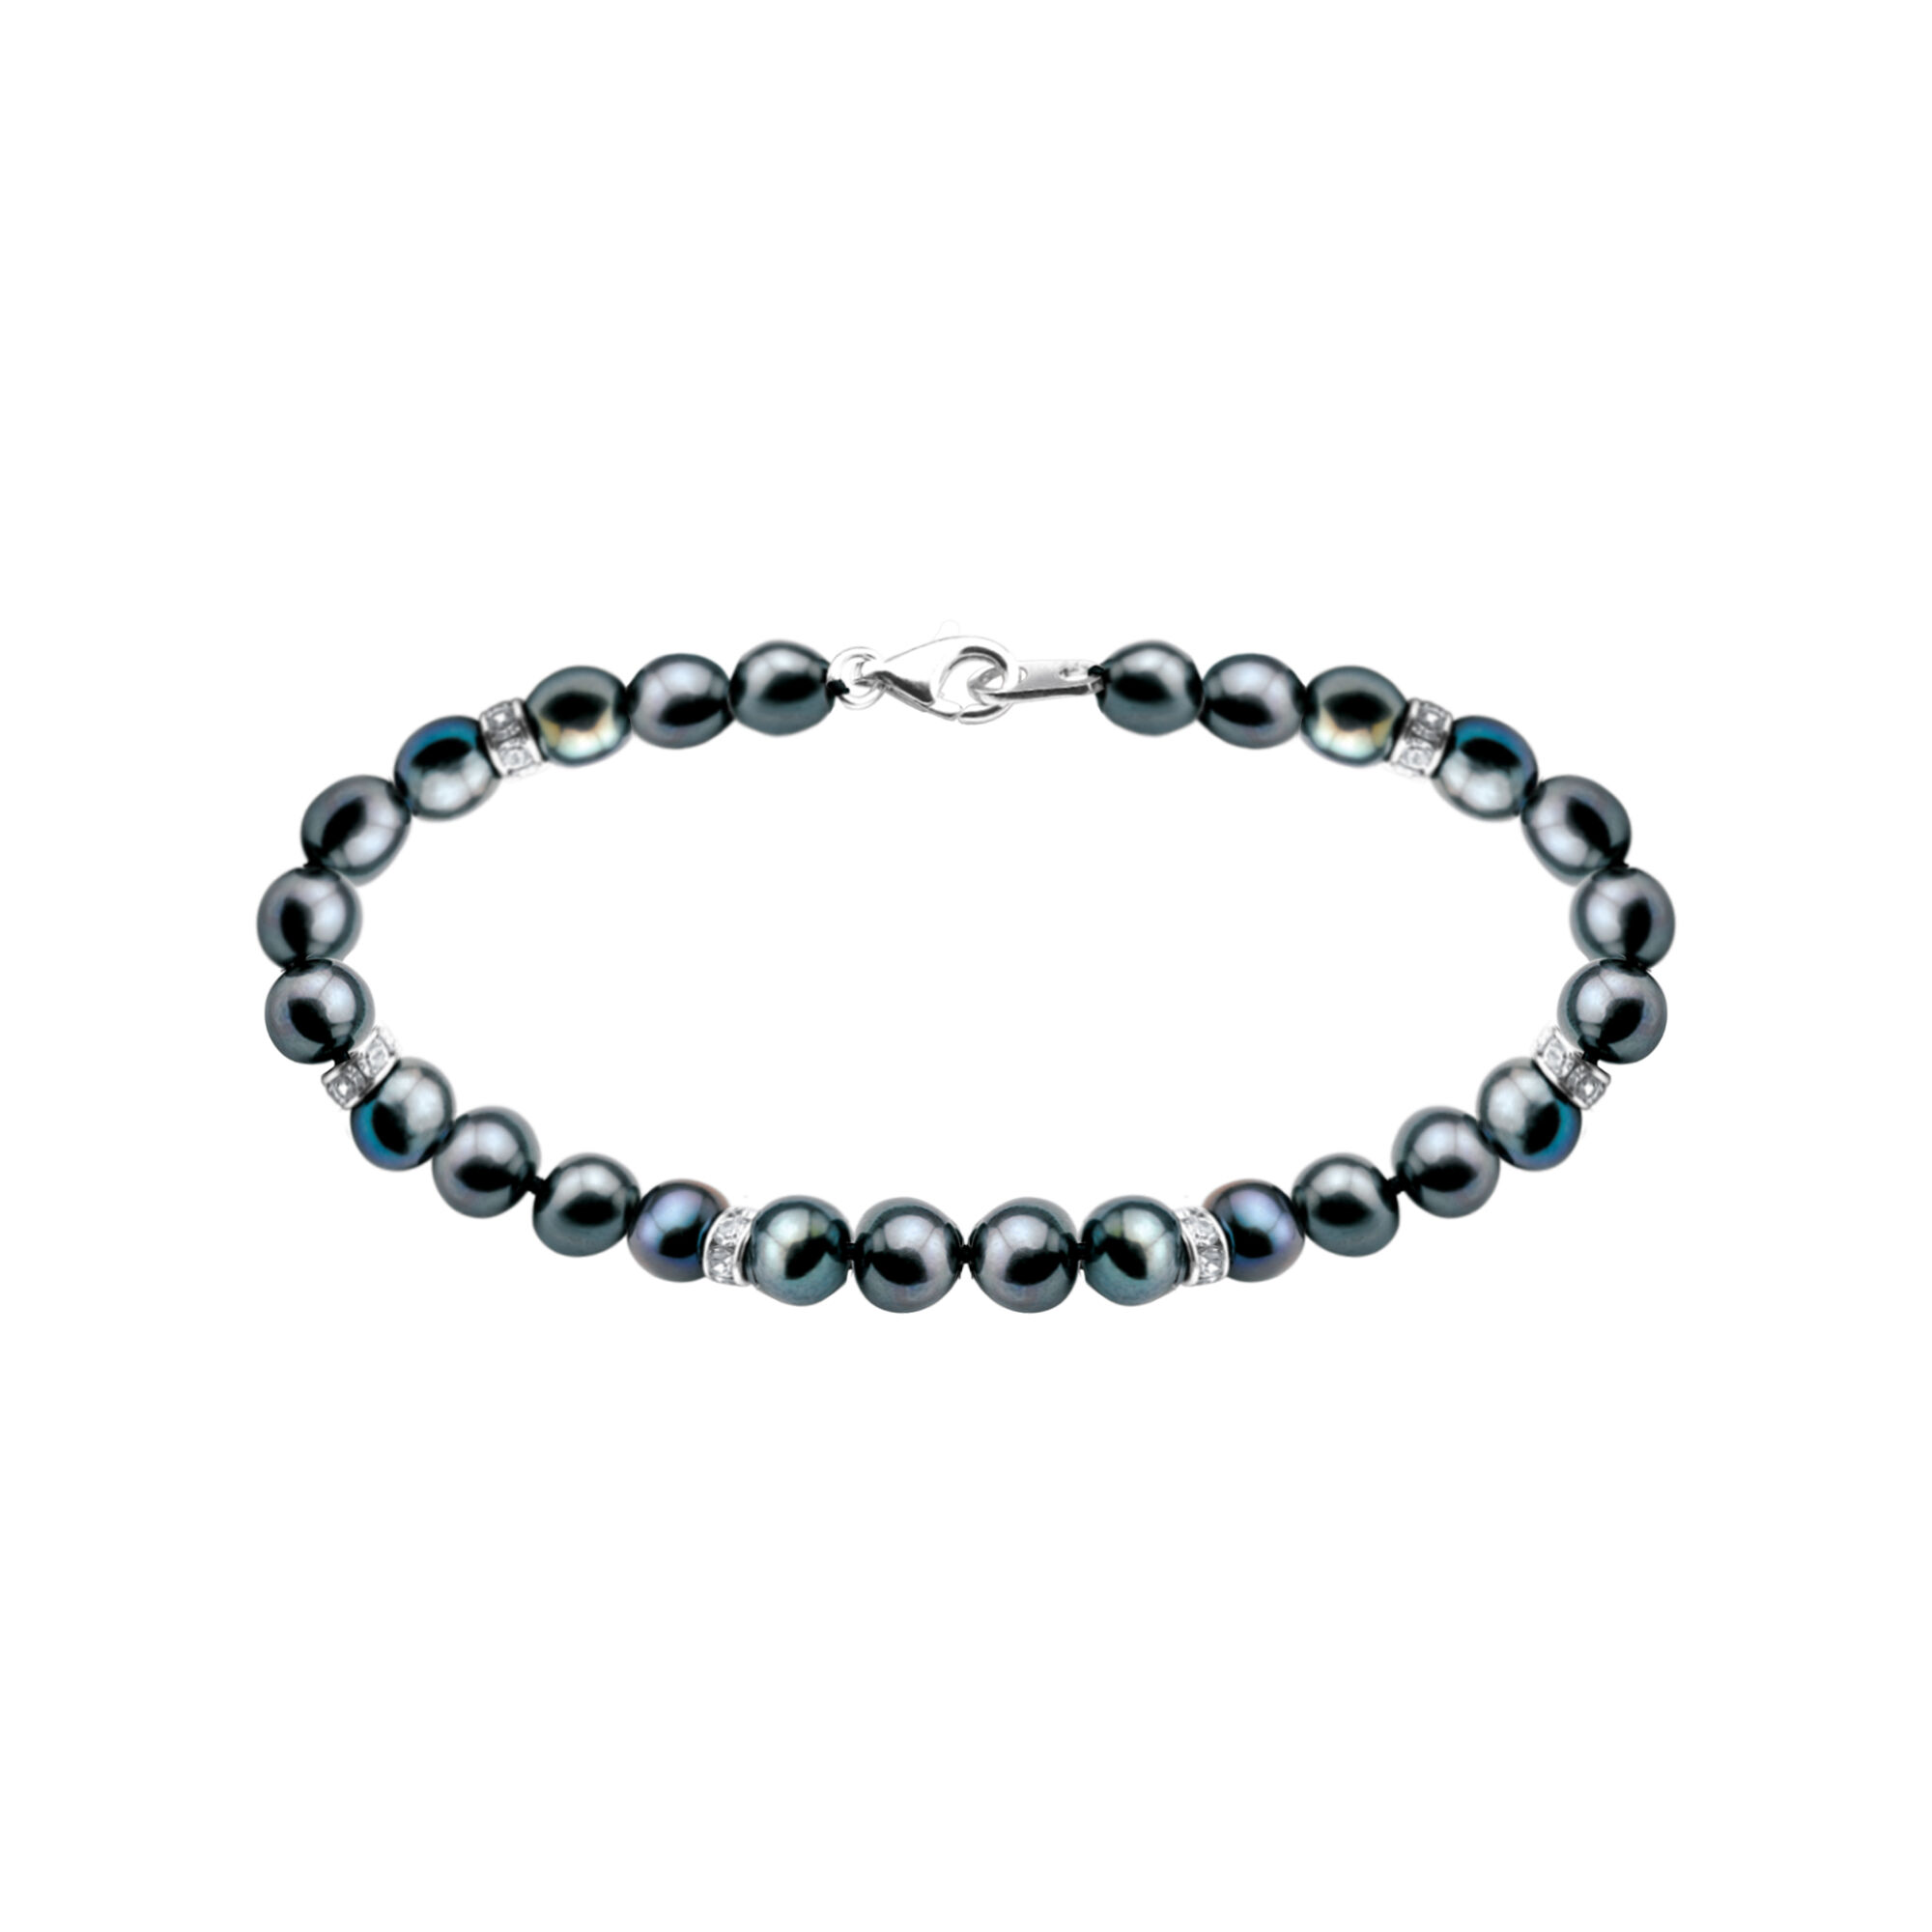 Midnight Spell Bracelet and Earrings Set 1333 0378 b bracelet